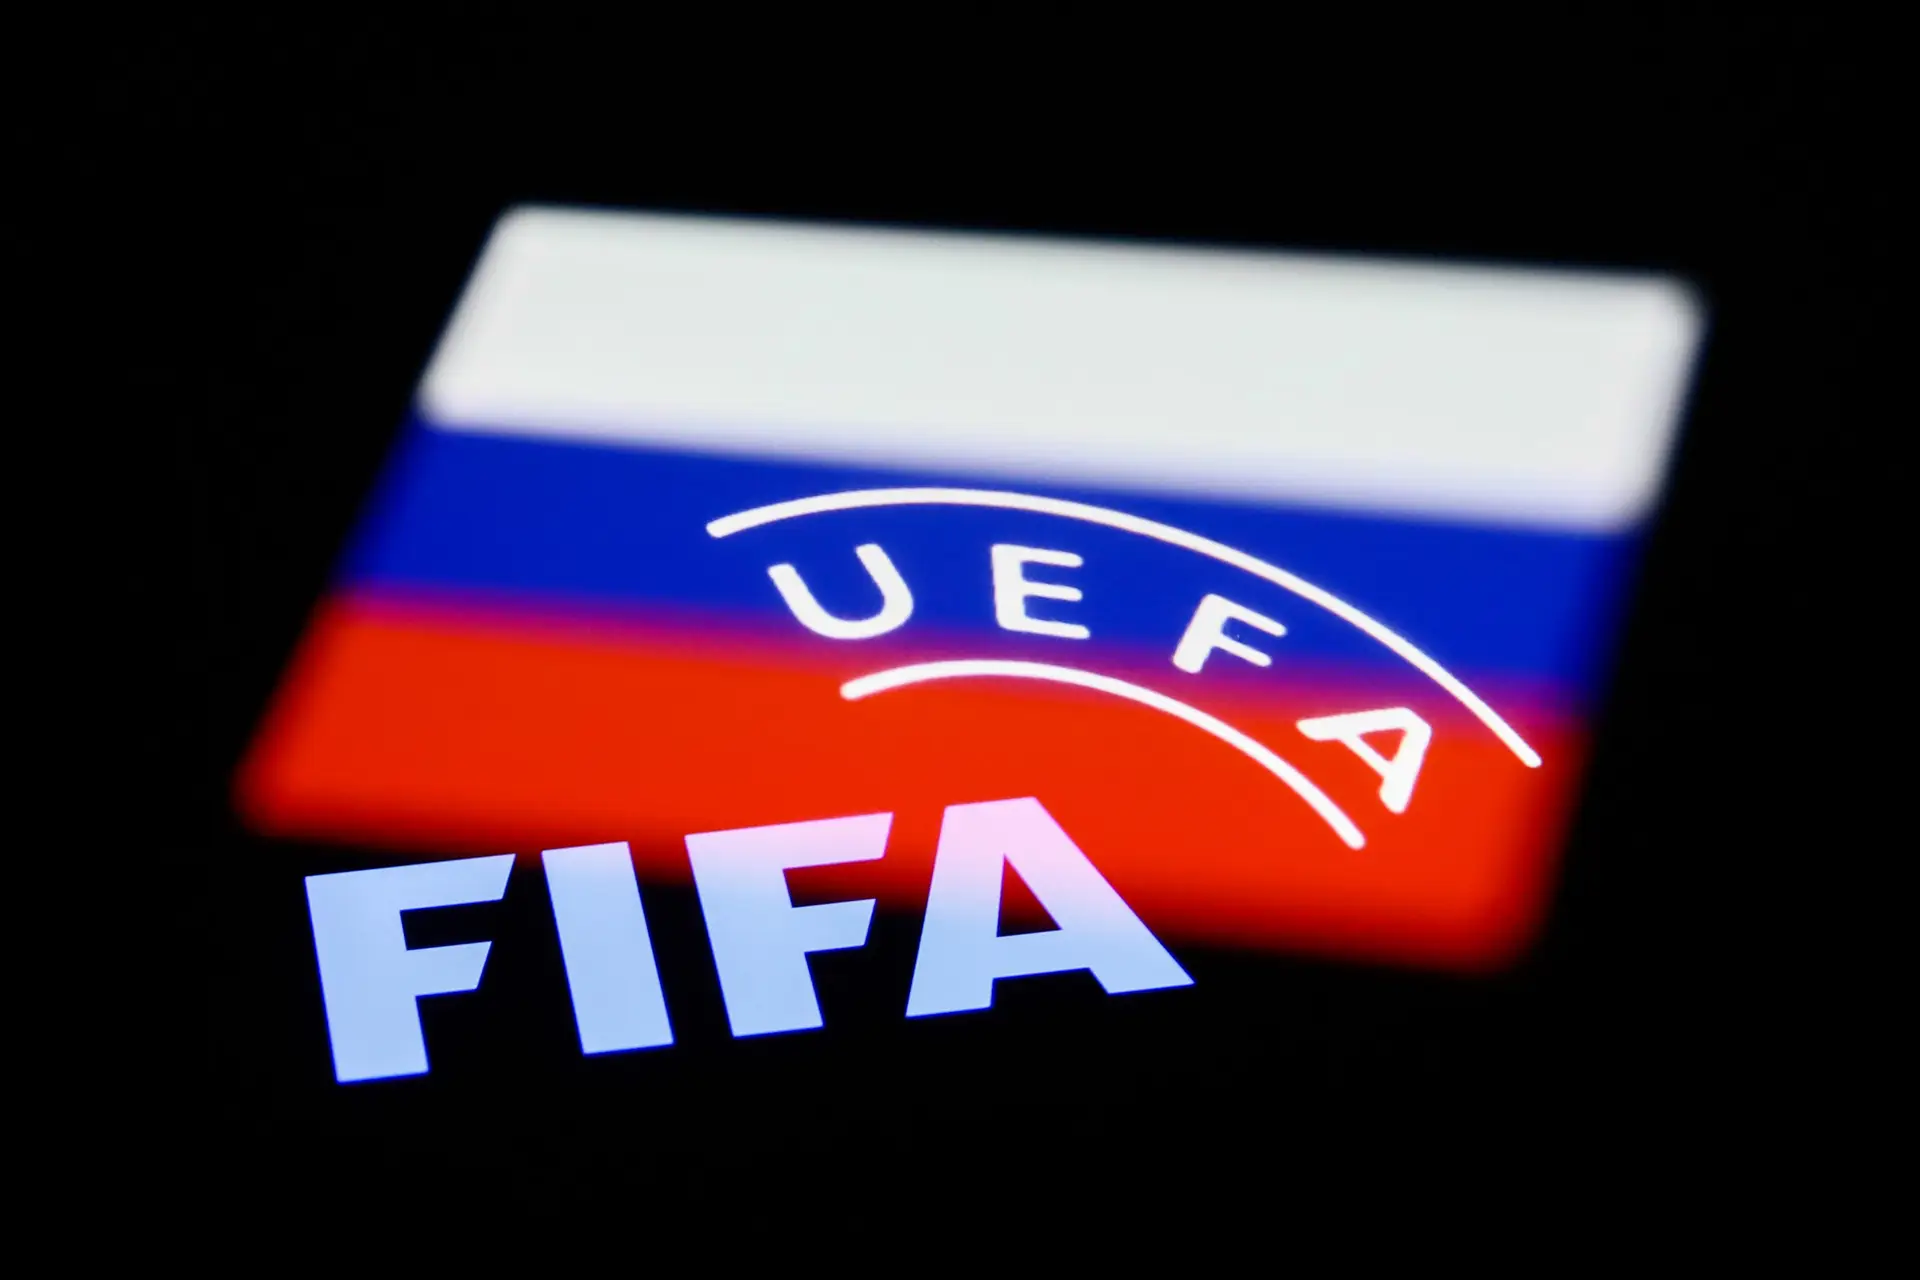 Equipas russas continuam excluídas das provas europeias em 2022/23